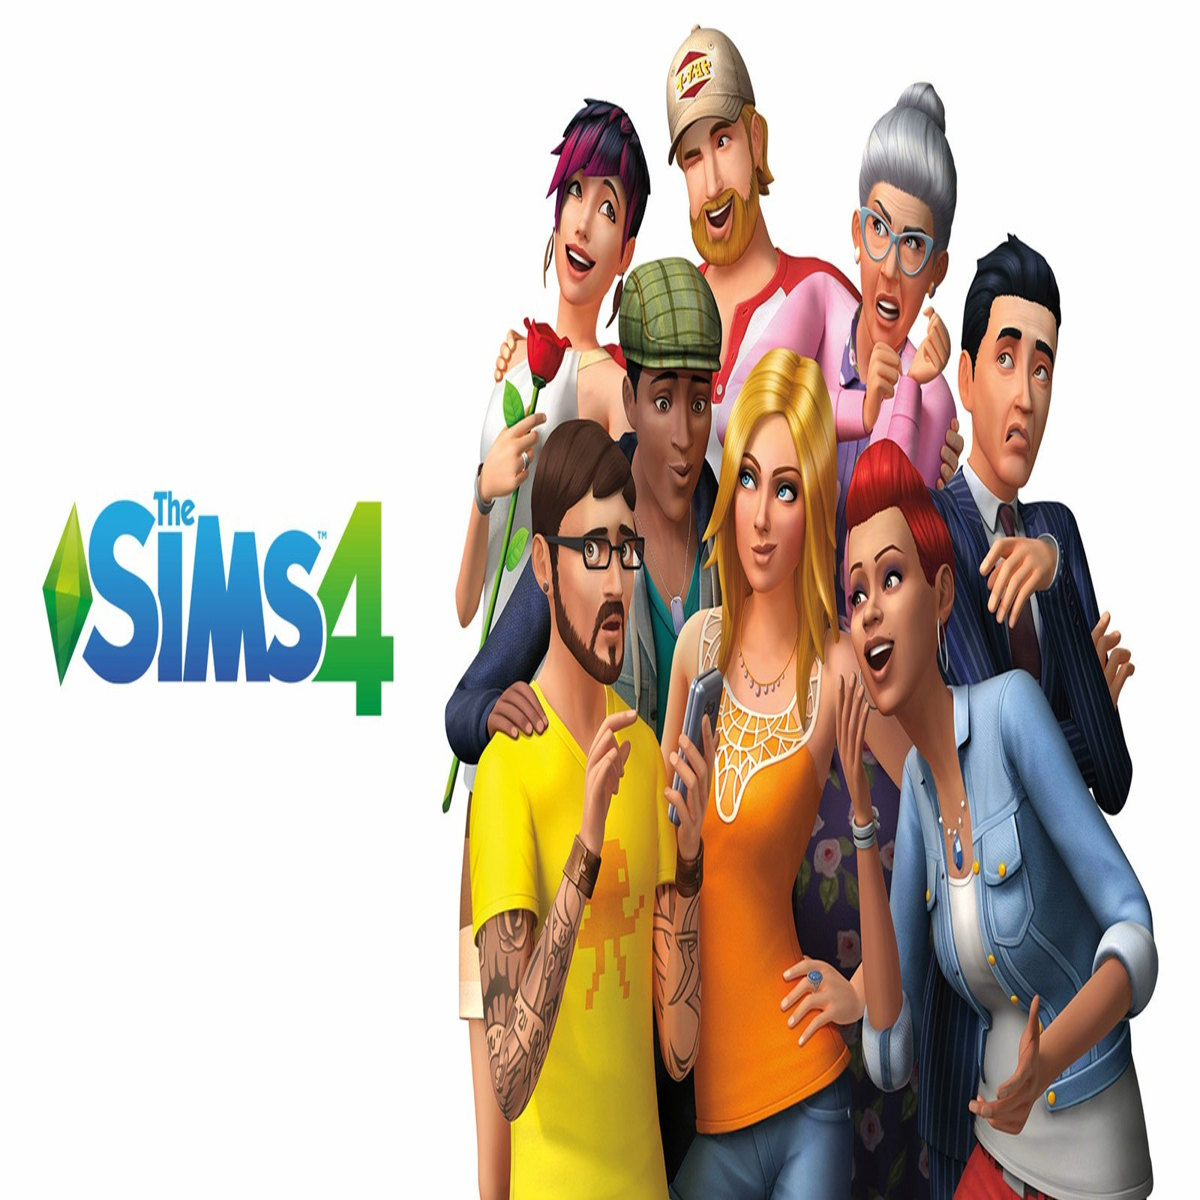 The Sims 4 Vampires Mac Download, Mac Download Games